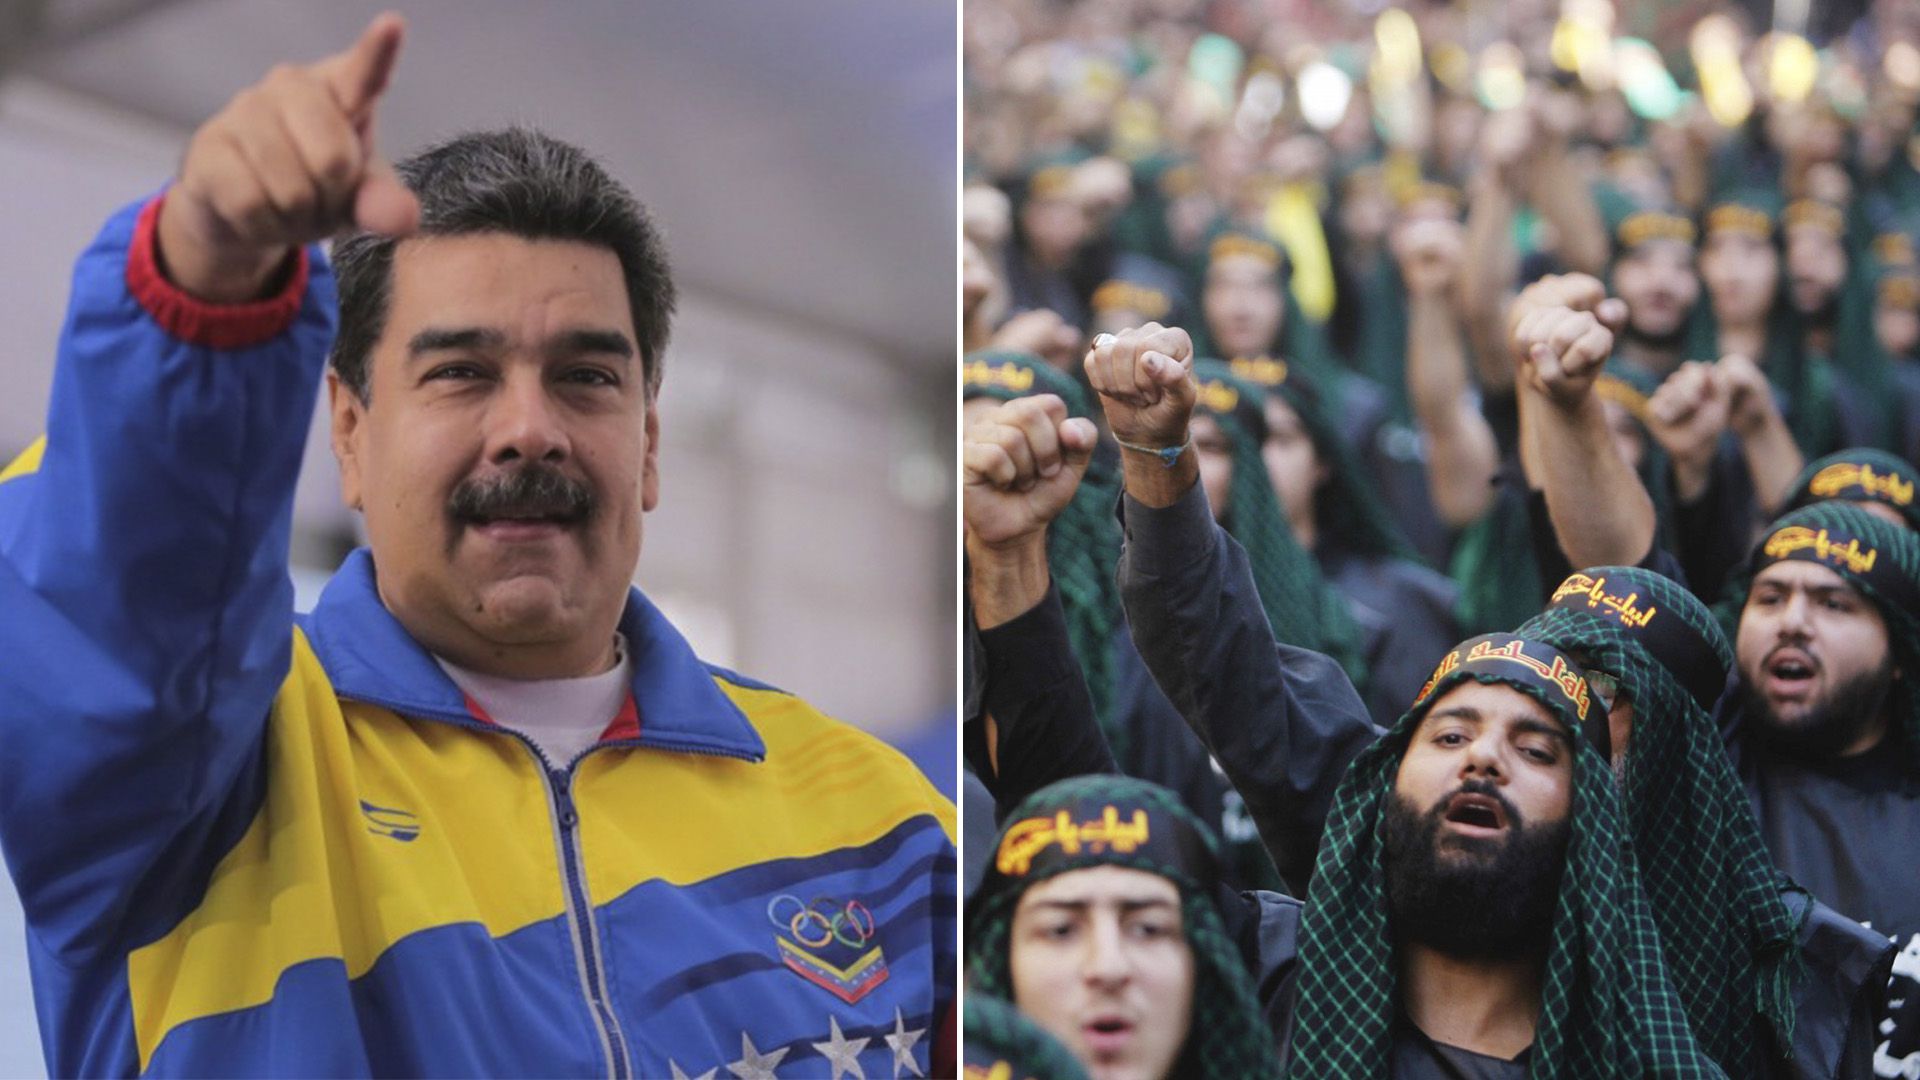 La presencia de Hezbollah en América Latina es cada vez mayor gracias a sus vínculos con la dictadura de Nicolás Maduro